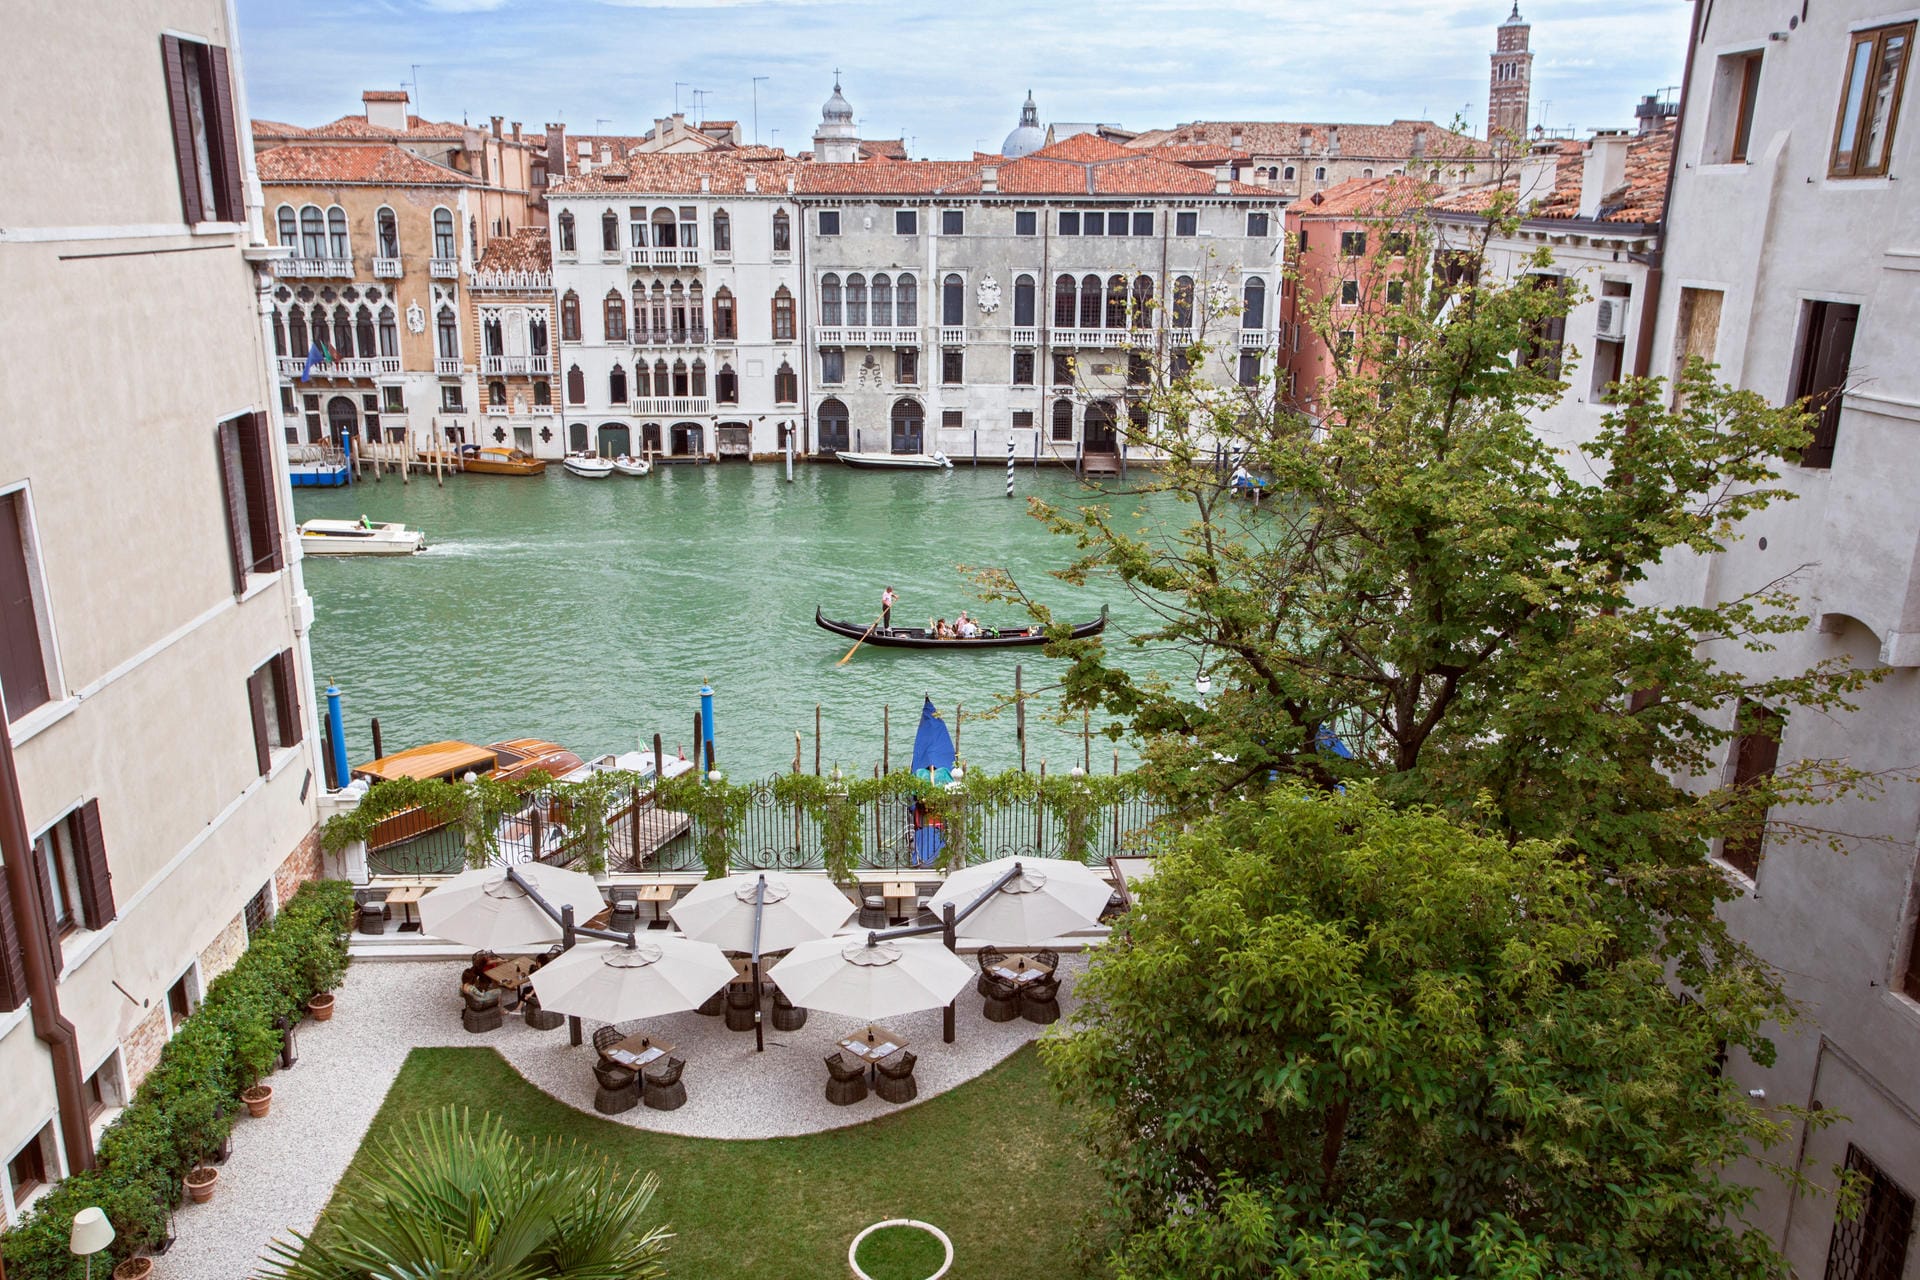 Das Luxushotel "Aman" in Venedig liegt direkt am Canal Grande. Es hat – entgegen verschiedener anderslautender Berichte – "nur" fünf Sterne.